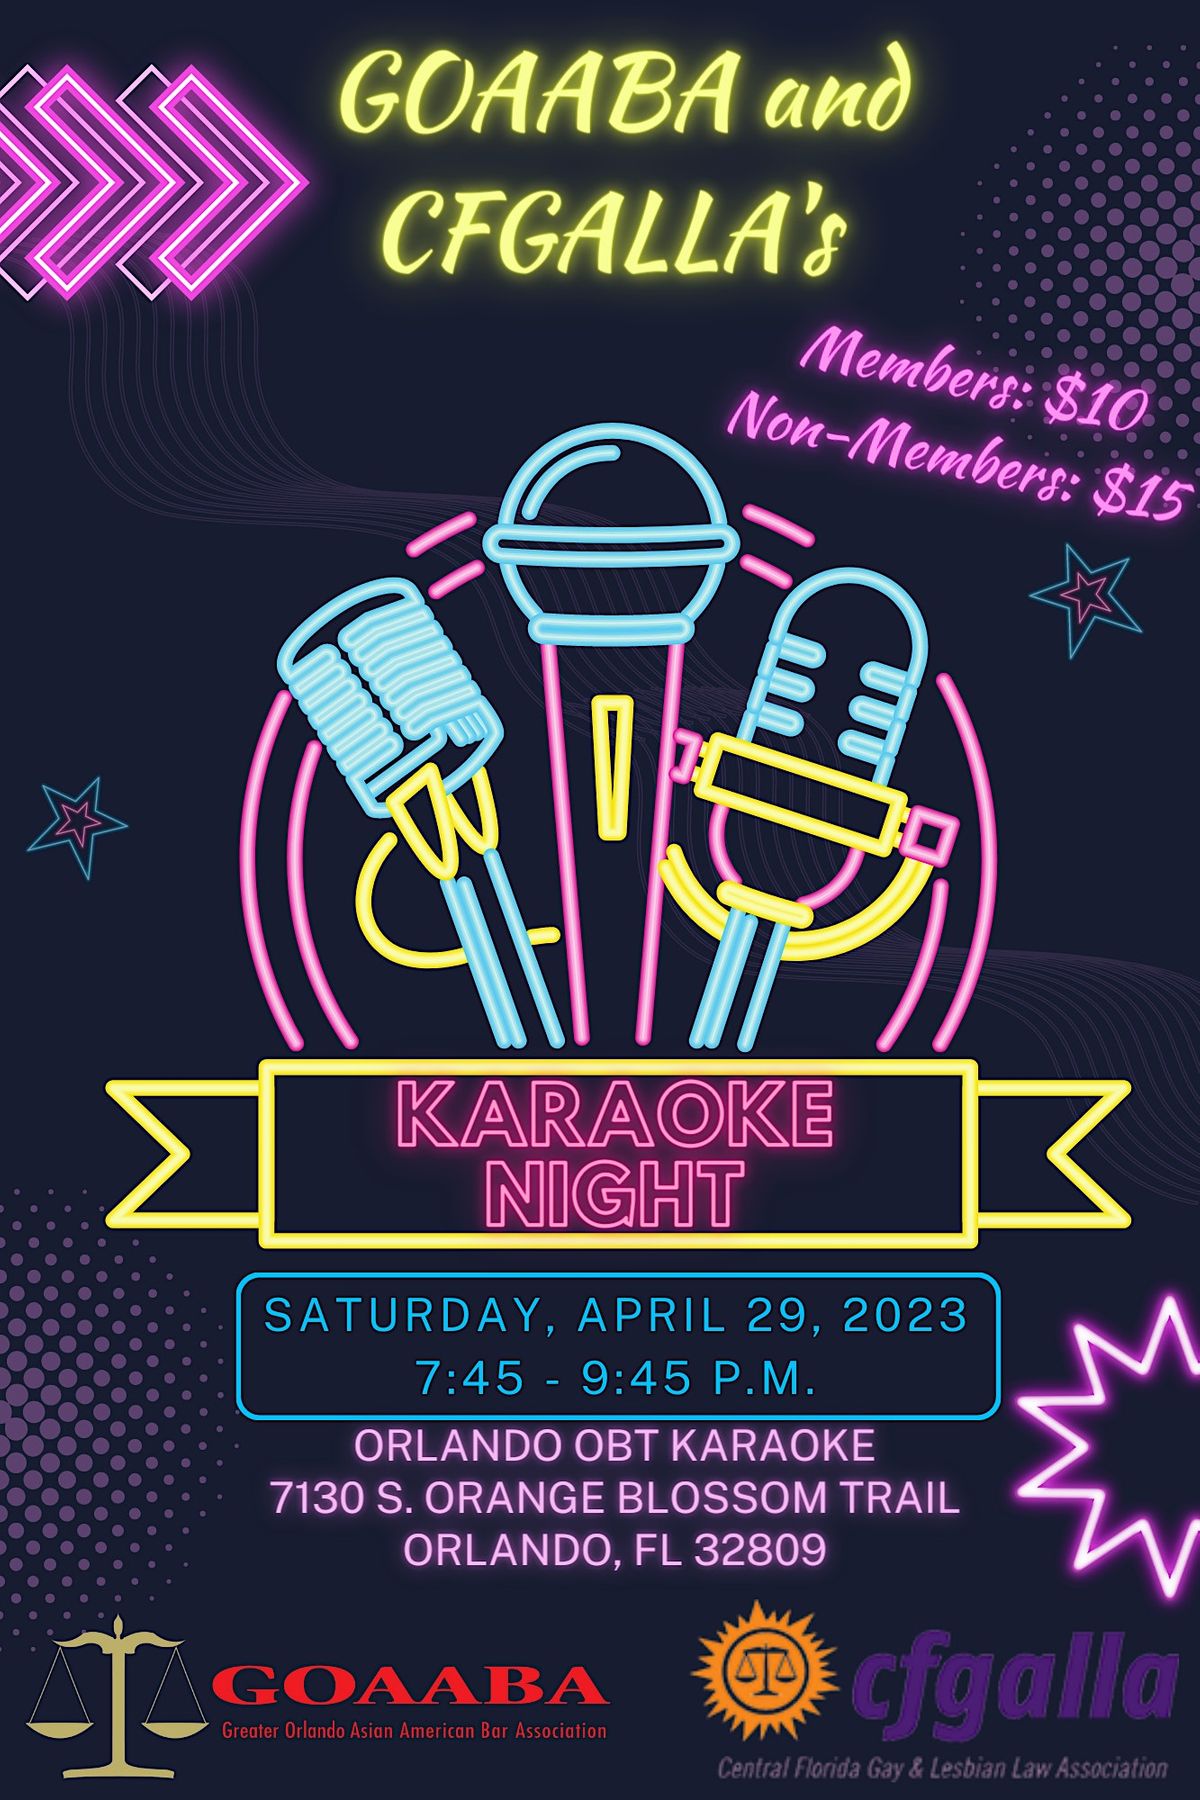 GOAABA & CFGALLA's Karaoke Night